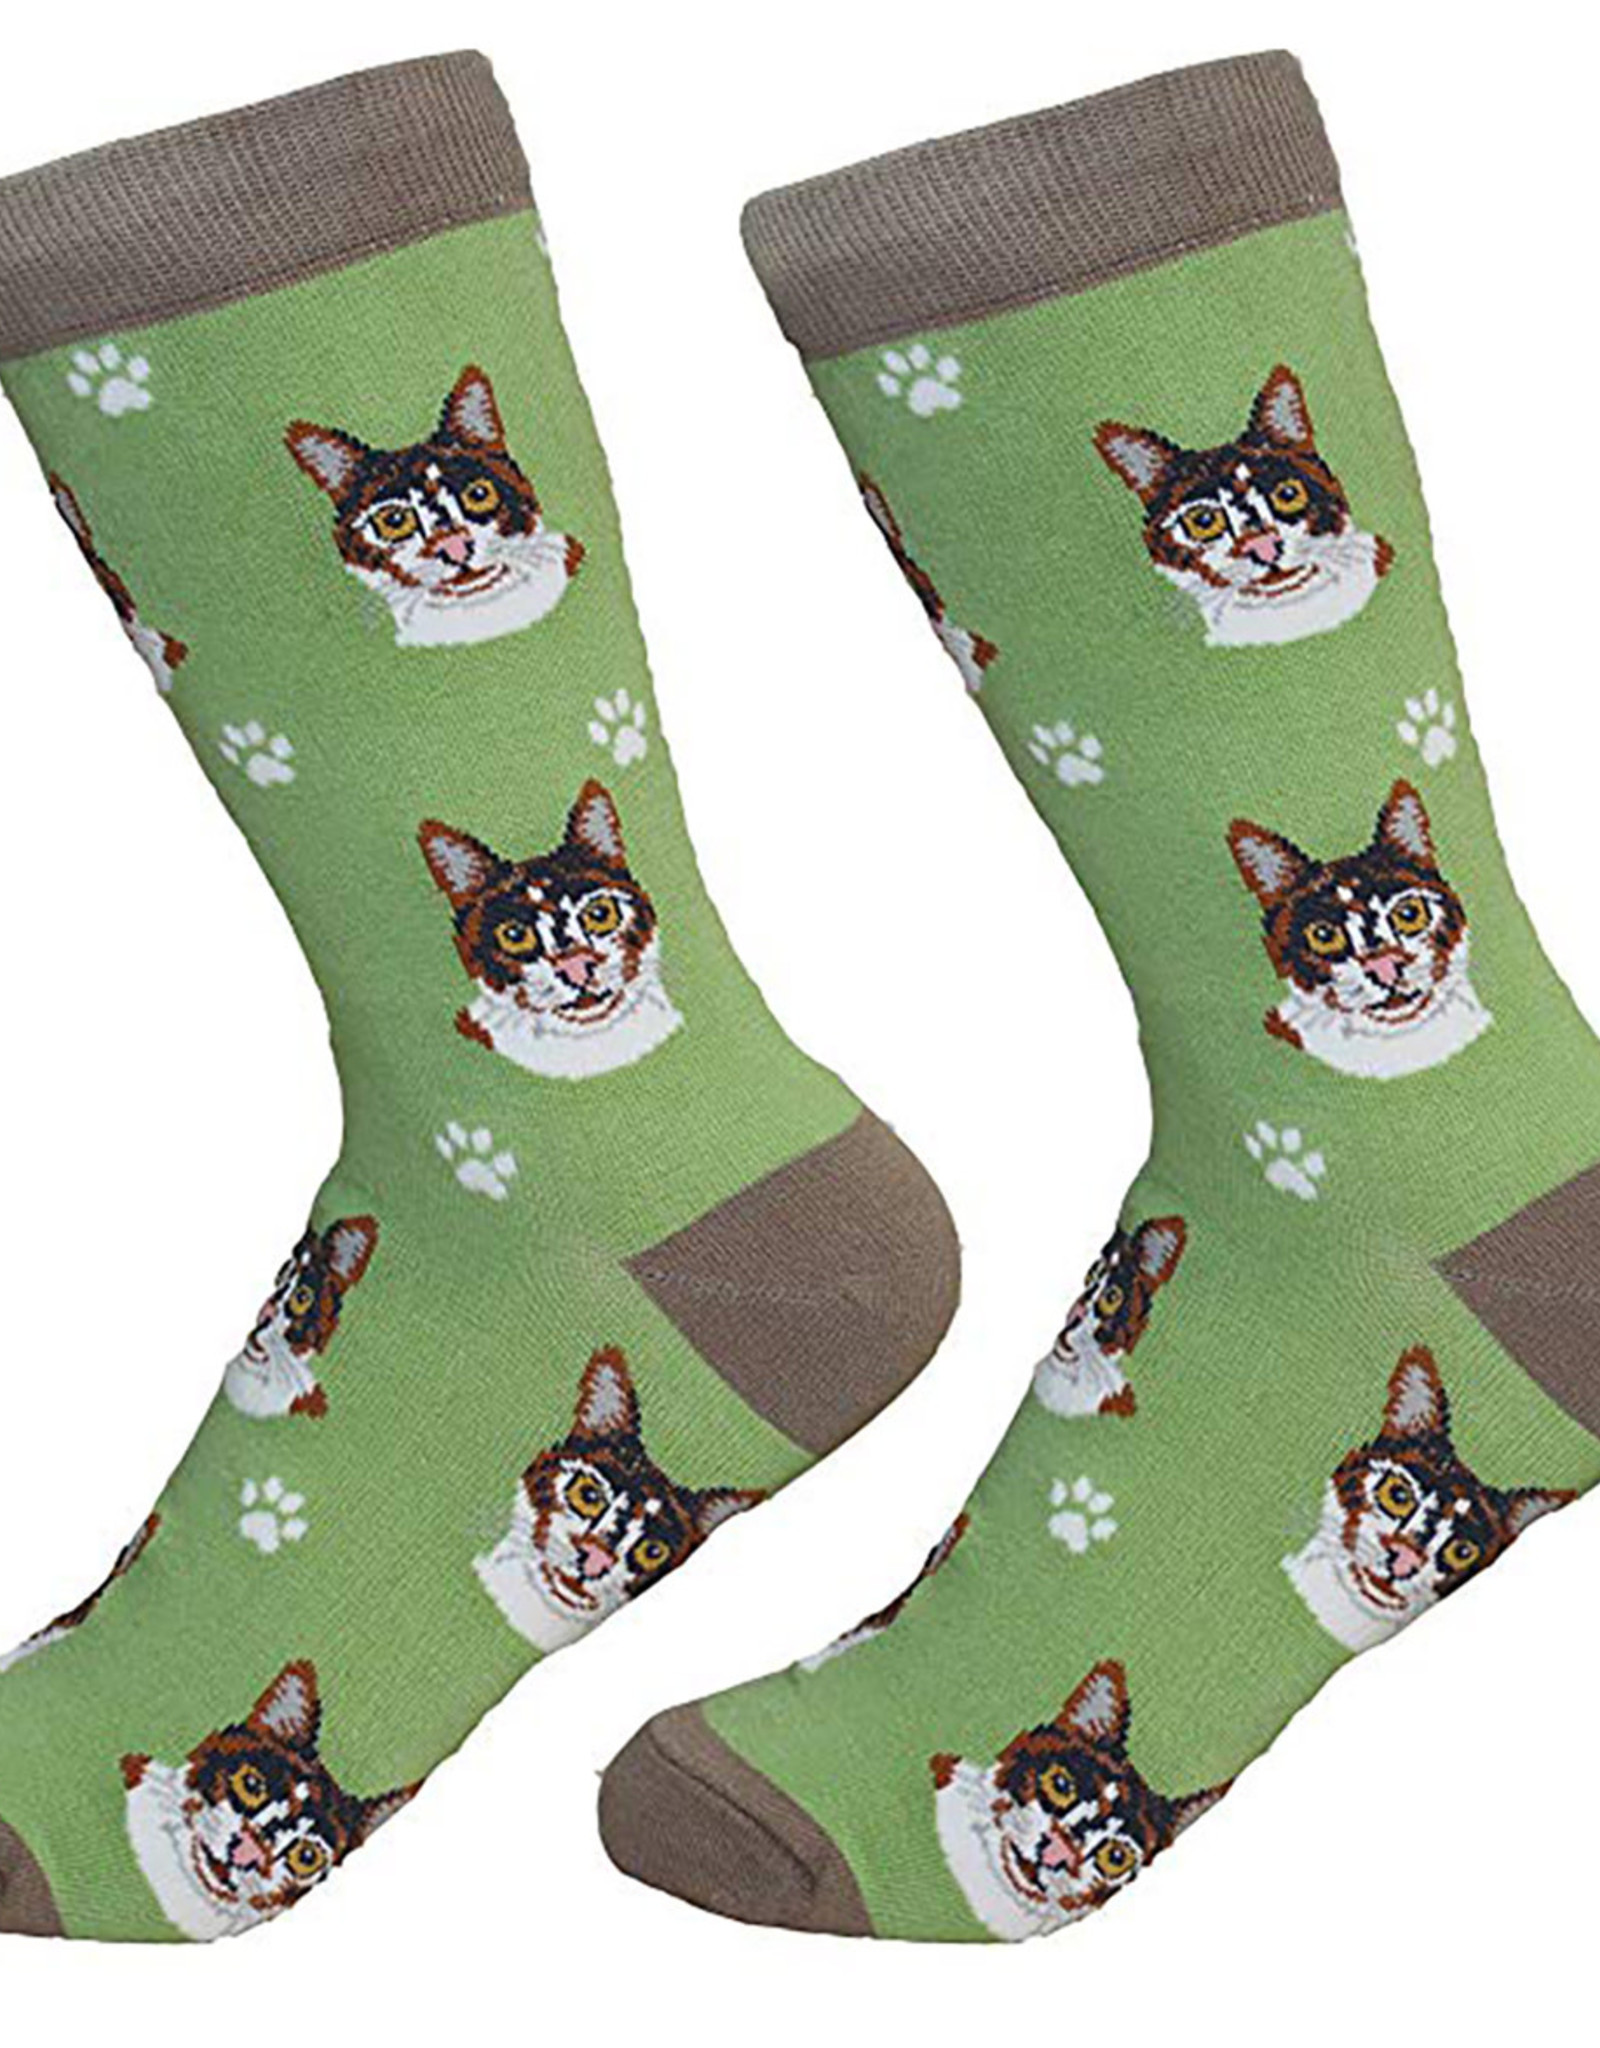 Cat - Calico Socks